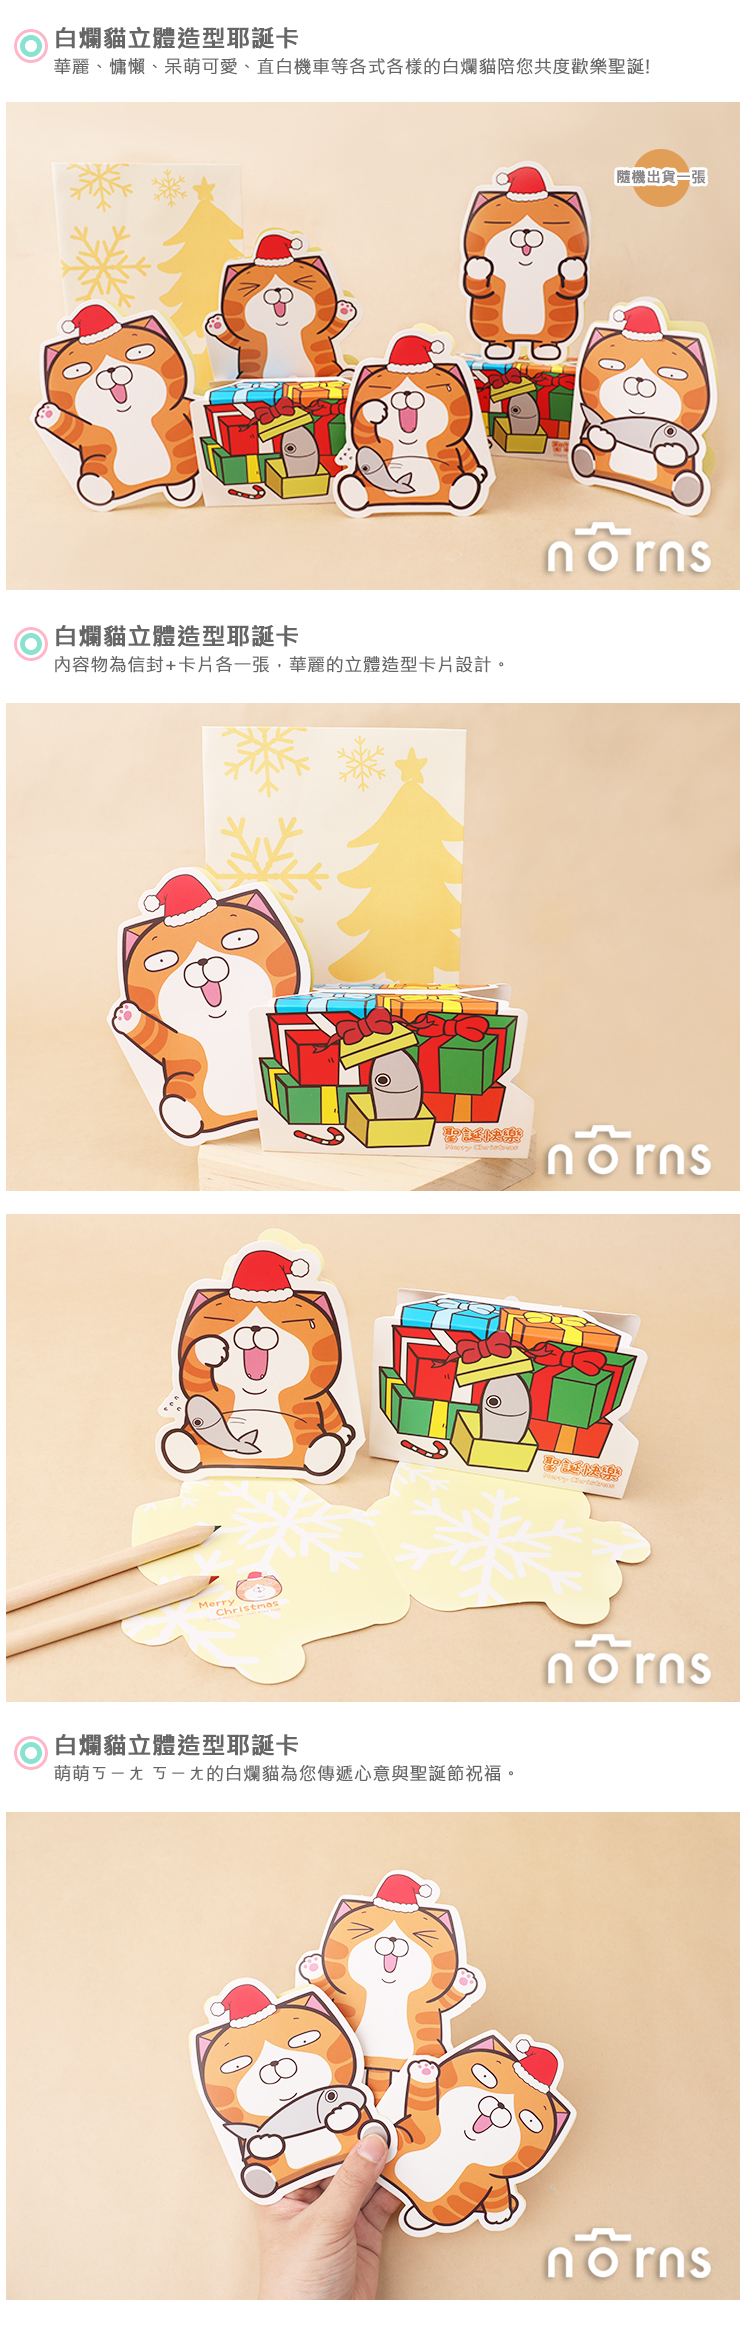 【白爛貓立體造型耶誕卡】Norns 正版授權 聖誕節卡片 聖誕卡 X